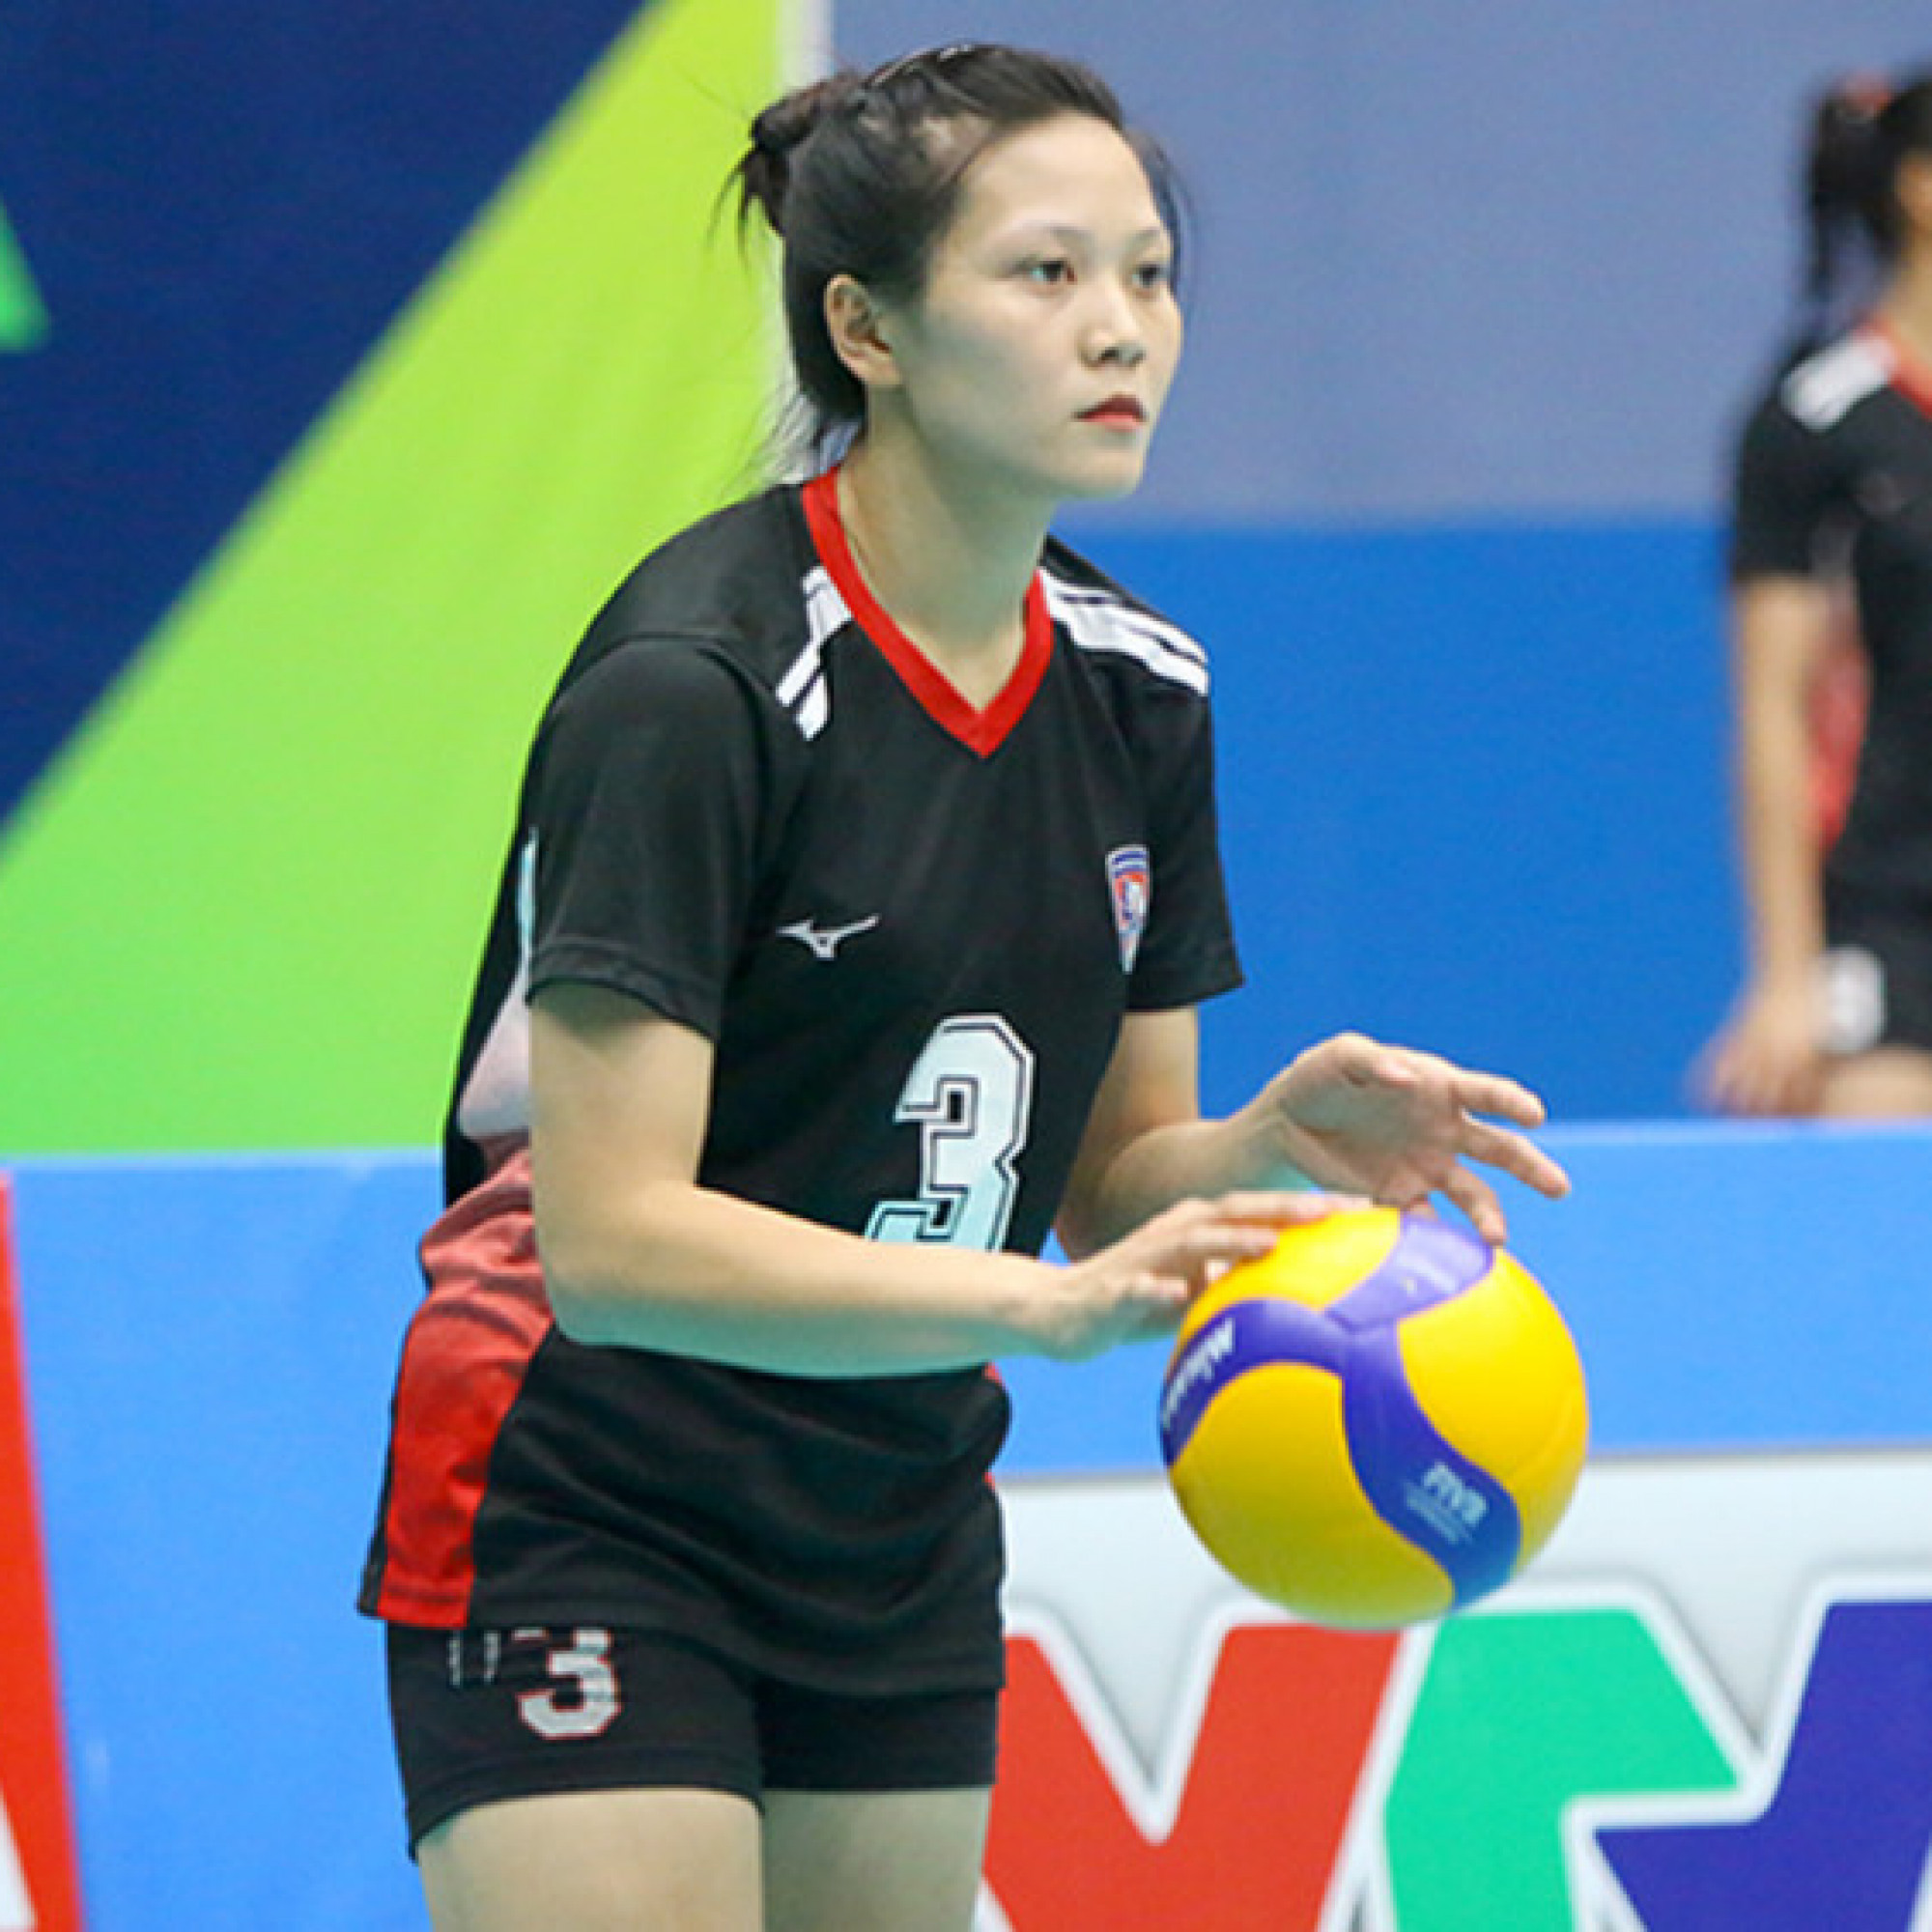 Thể thao - Hot girl bóng chuyền Thu Trang kiến tạo đẹp mắt, ngoại binh khiến Quảng Ninh lo lắng